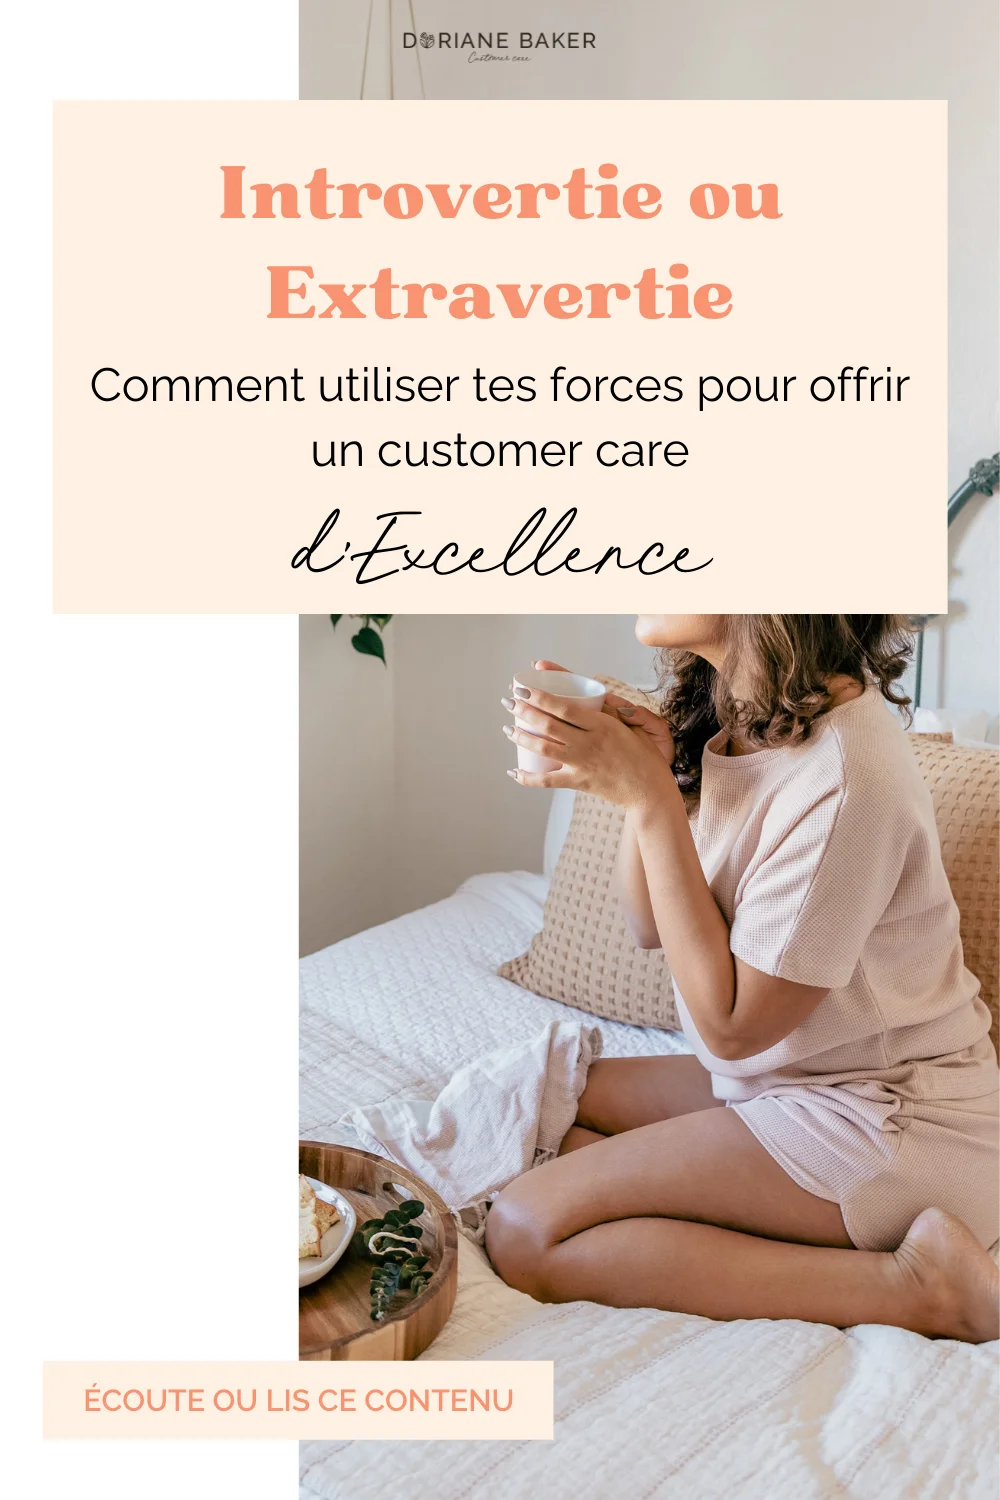 Introvertie ou Extravertie : utilise tes forces pour offrir un customer care d’excellence